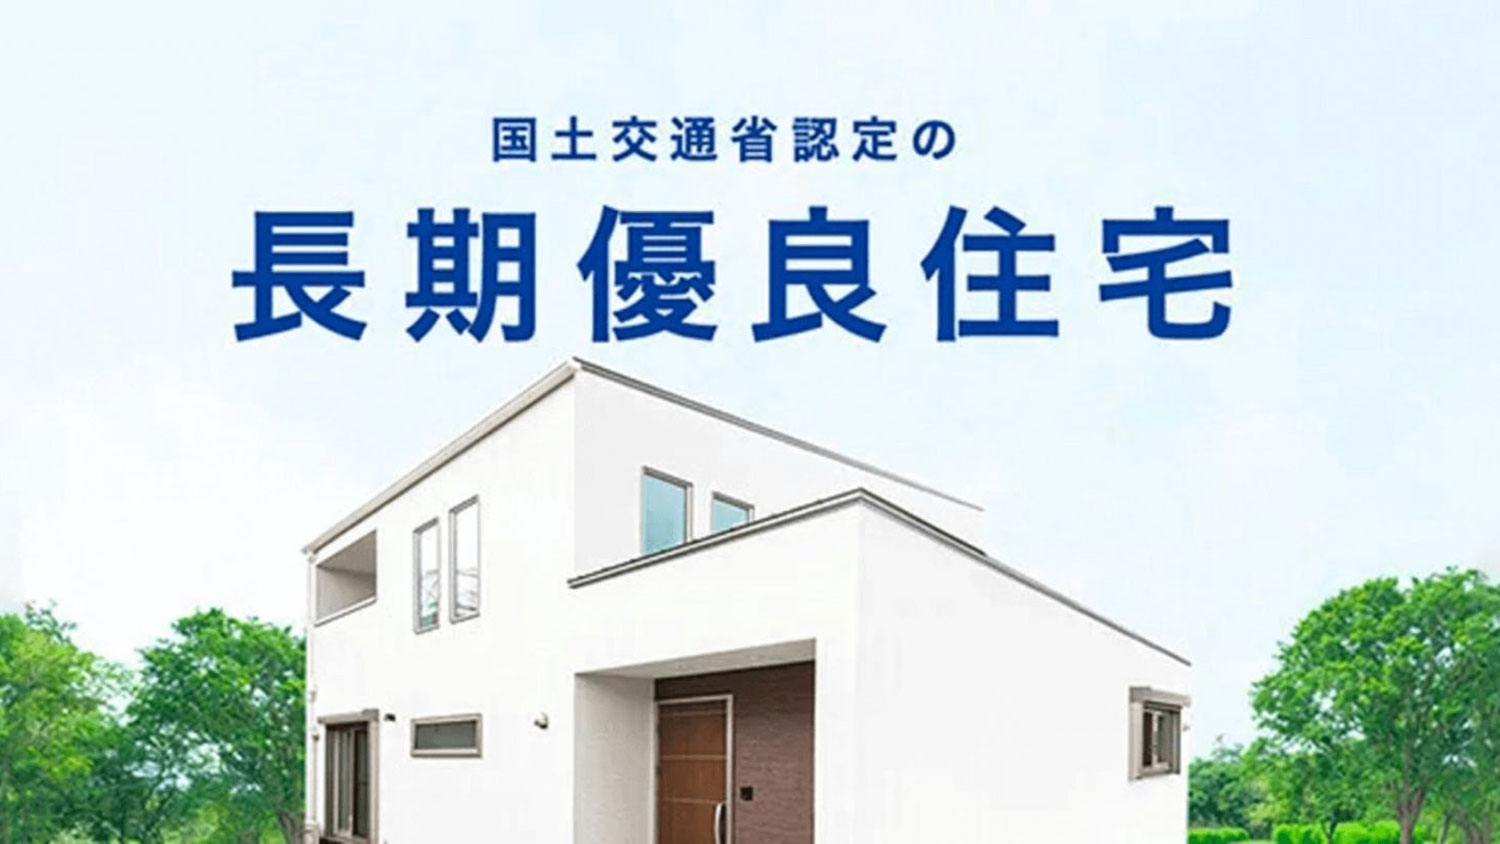 福岡で平屋の注文住宅を建てるなら【選び方と相場を解説】